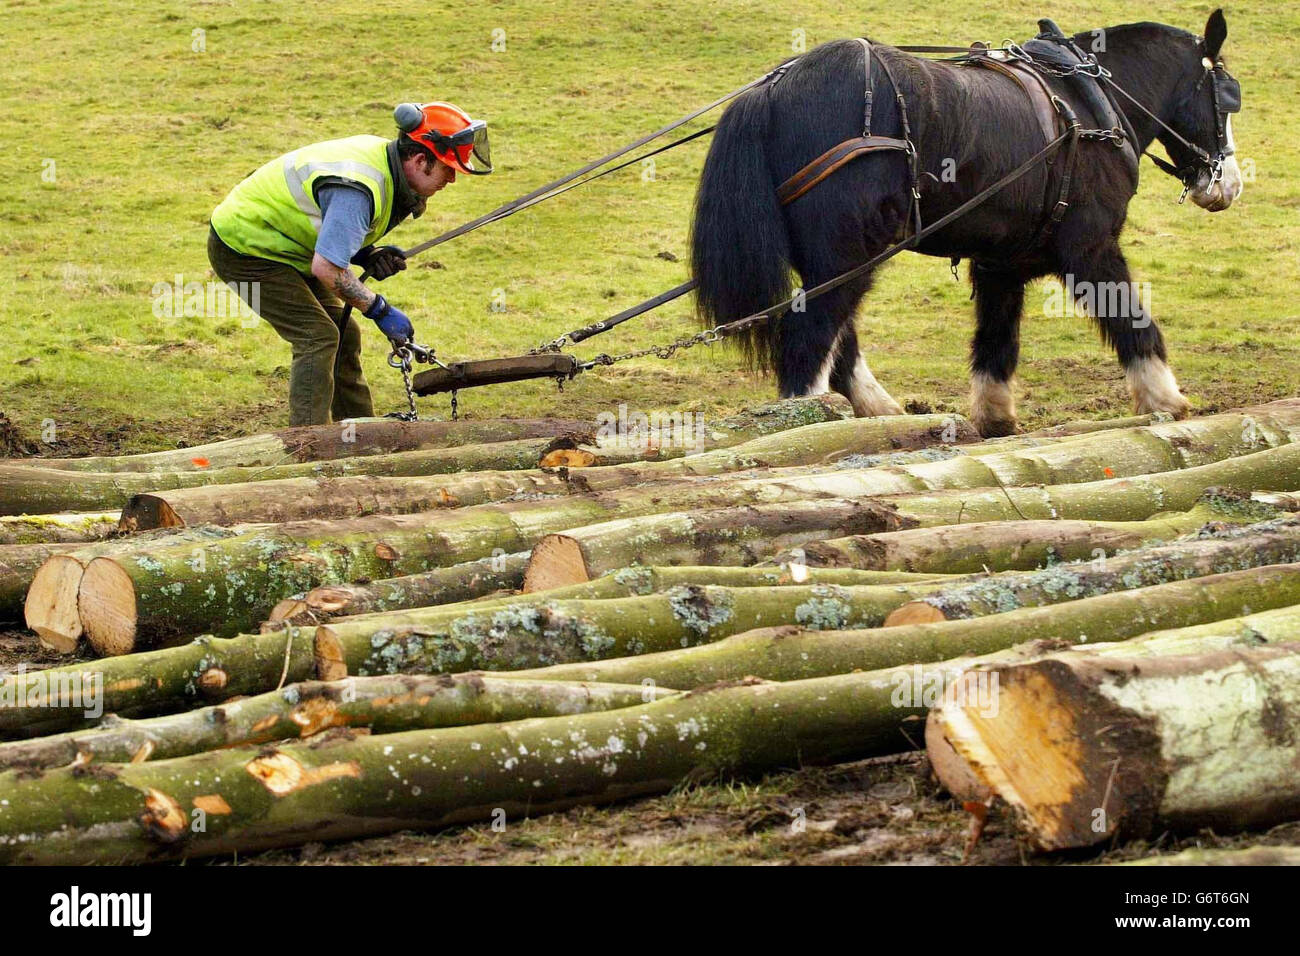 Dandy, das Clydesdale-Pferd, zieht mit dem Holzfäller Graham Gilmour Baumstämme aus einer Waldschlucht im Clyde Valley, nahe Crossford, Schottland. Die traditionelle Kunst wird wiederbelebt, um zu helfen, gefällte Bäume zu entfernen, um seltene und empfindliche Lebensräume im Tal zu schützen. Stockfoto